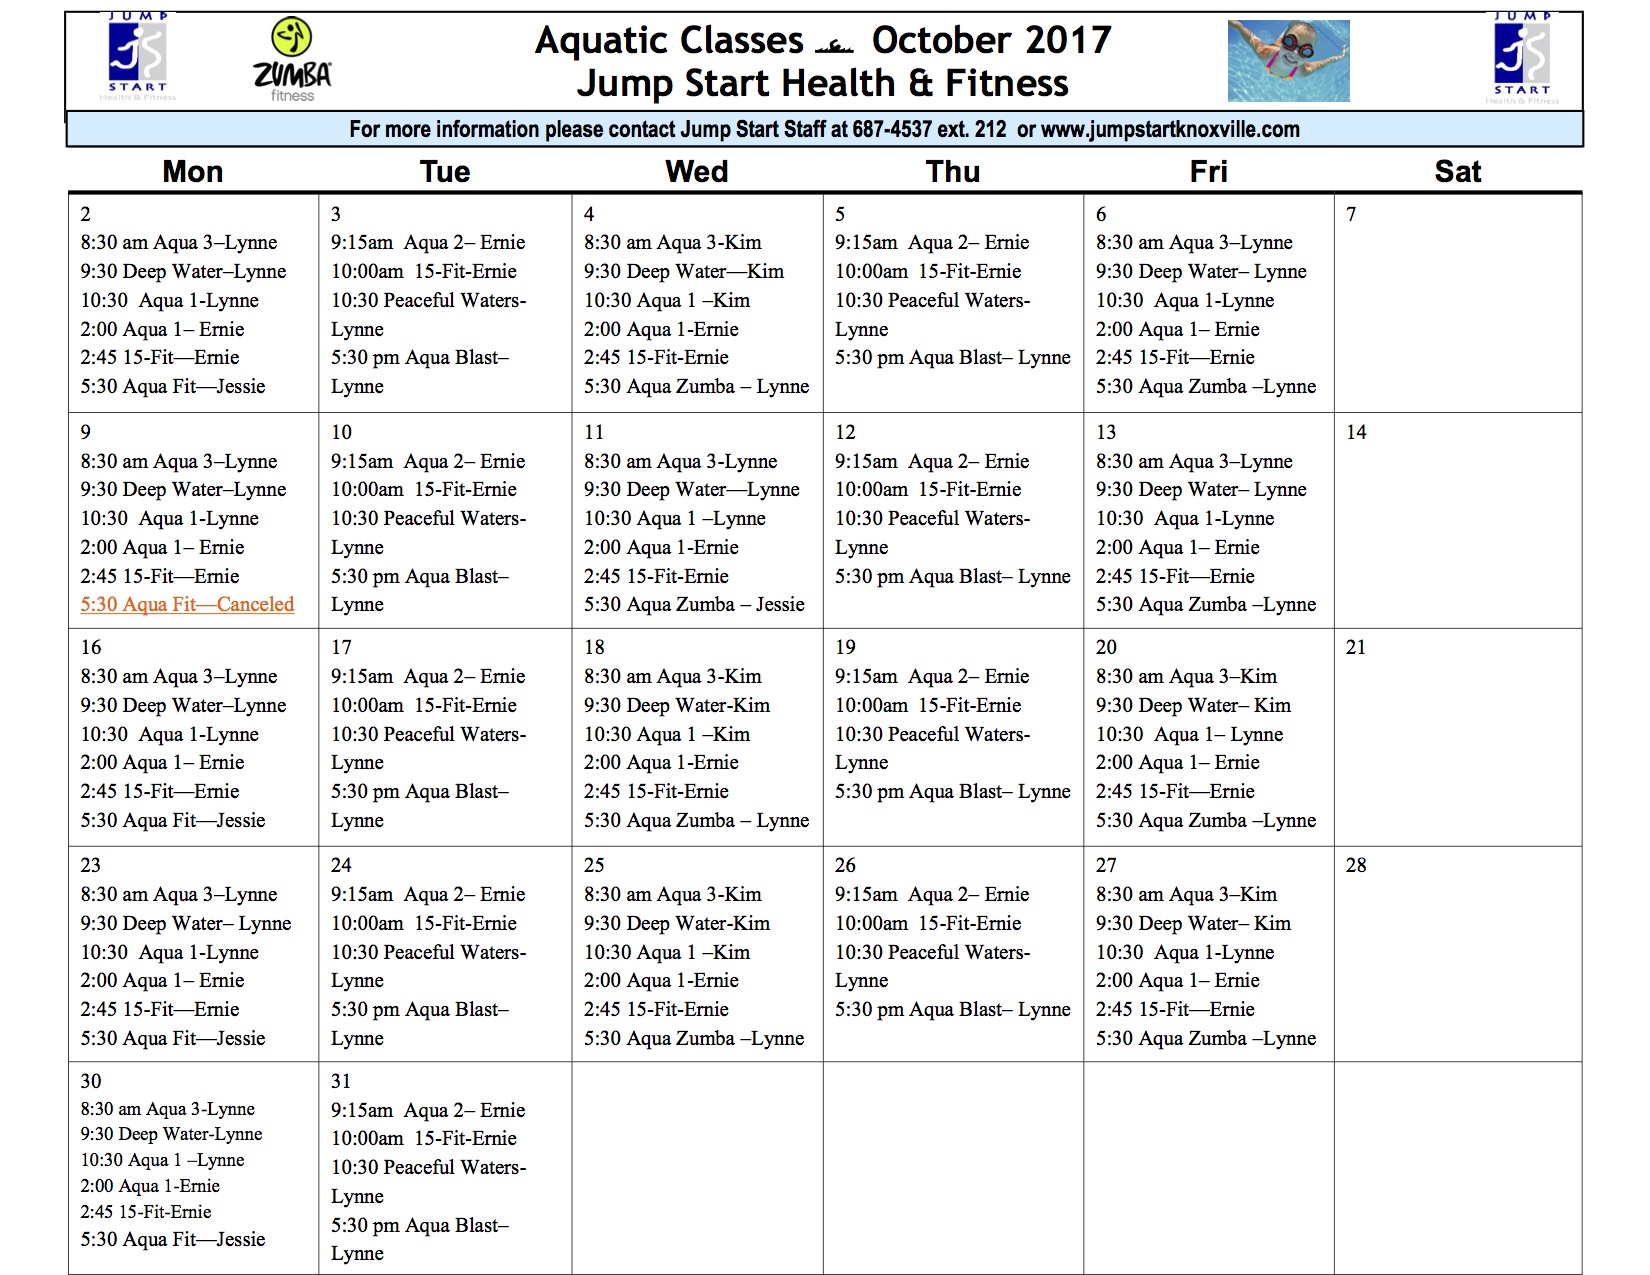 October 2017 Aquatic Class Schedule